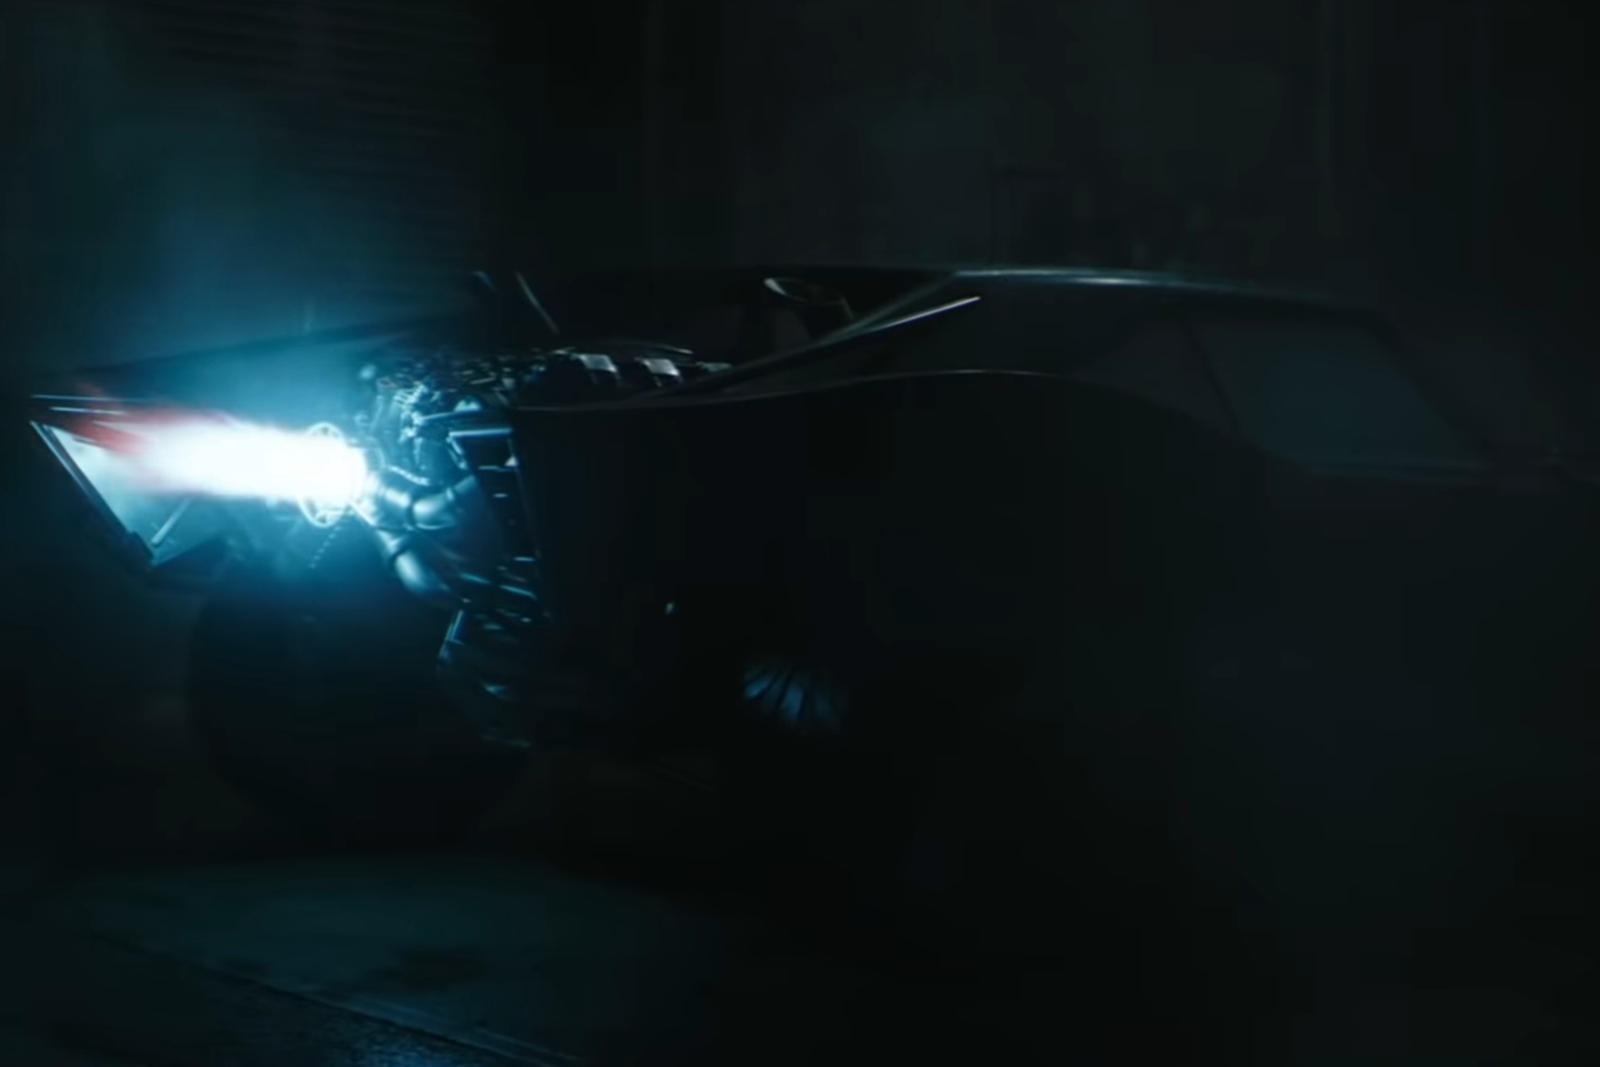 سيارة باتموبيل الجديدة تظهر في إعلان فيلم باتمان القادم 22